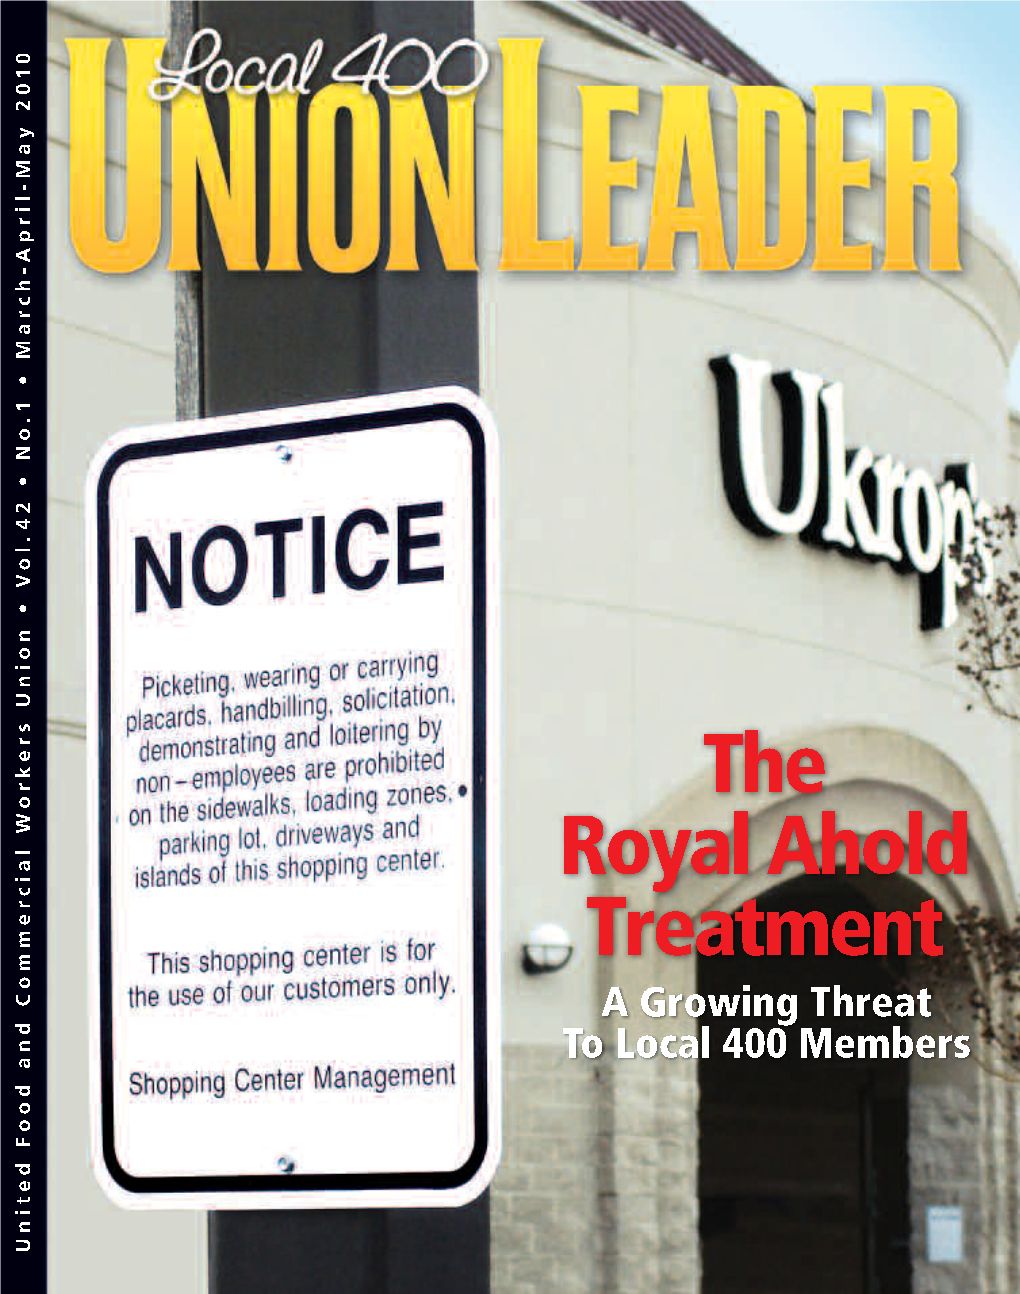 Union Leader Headlines